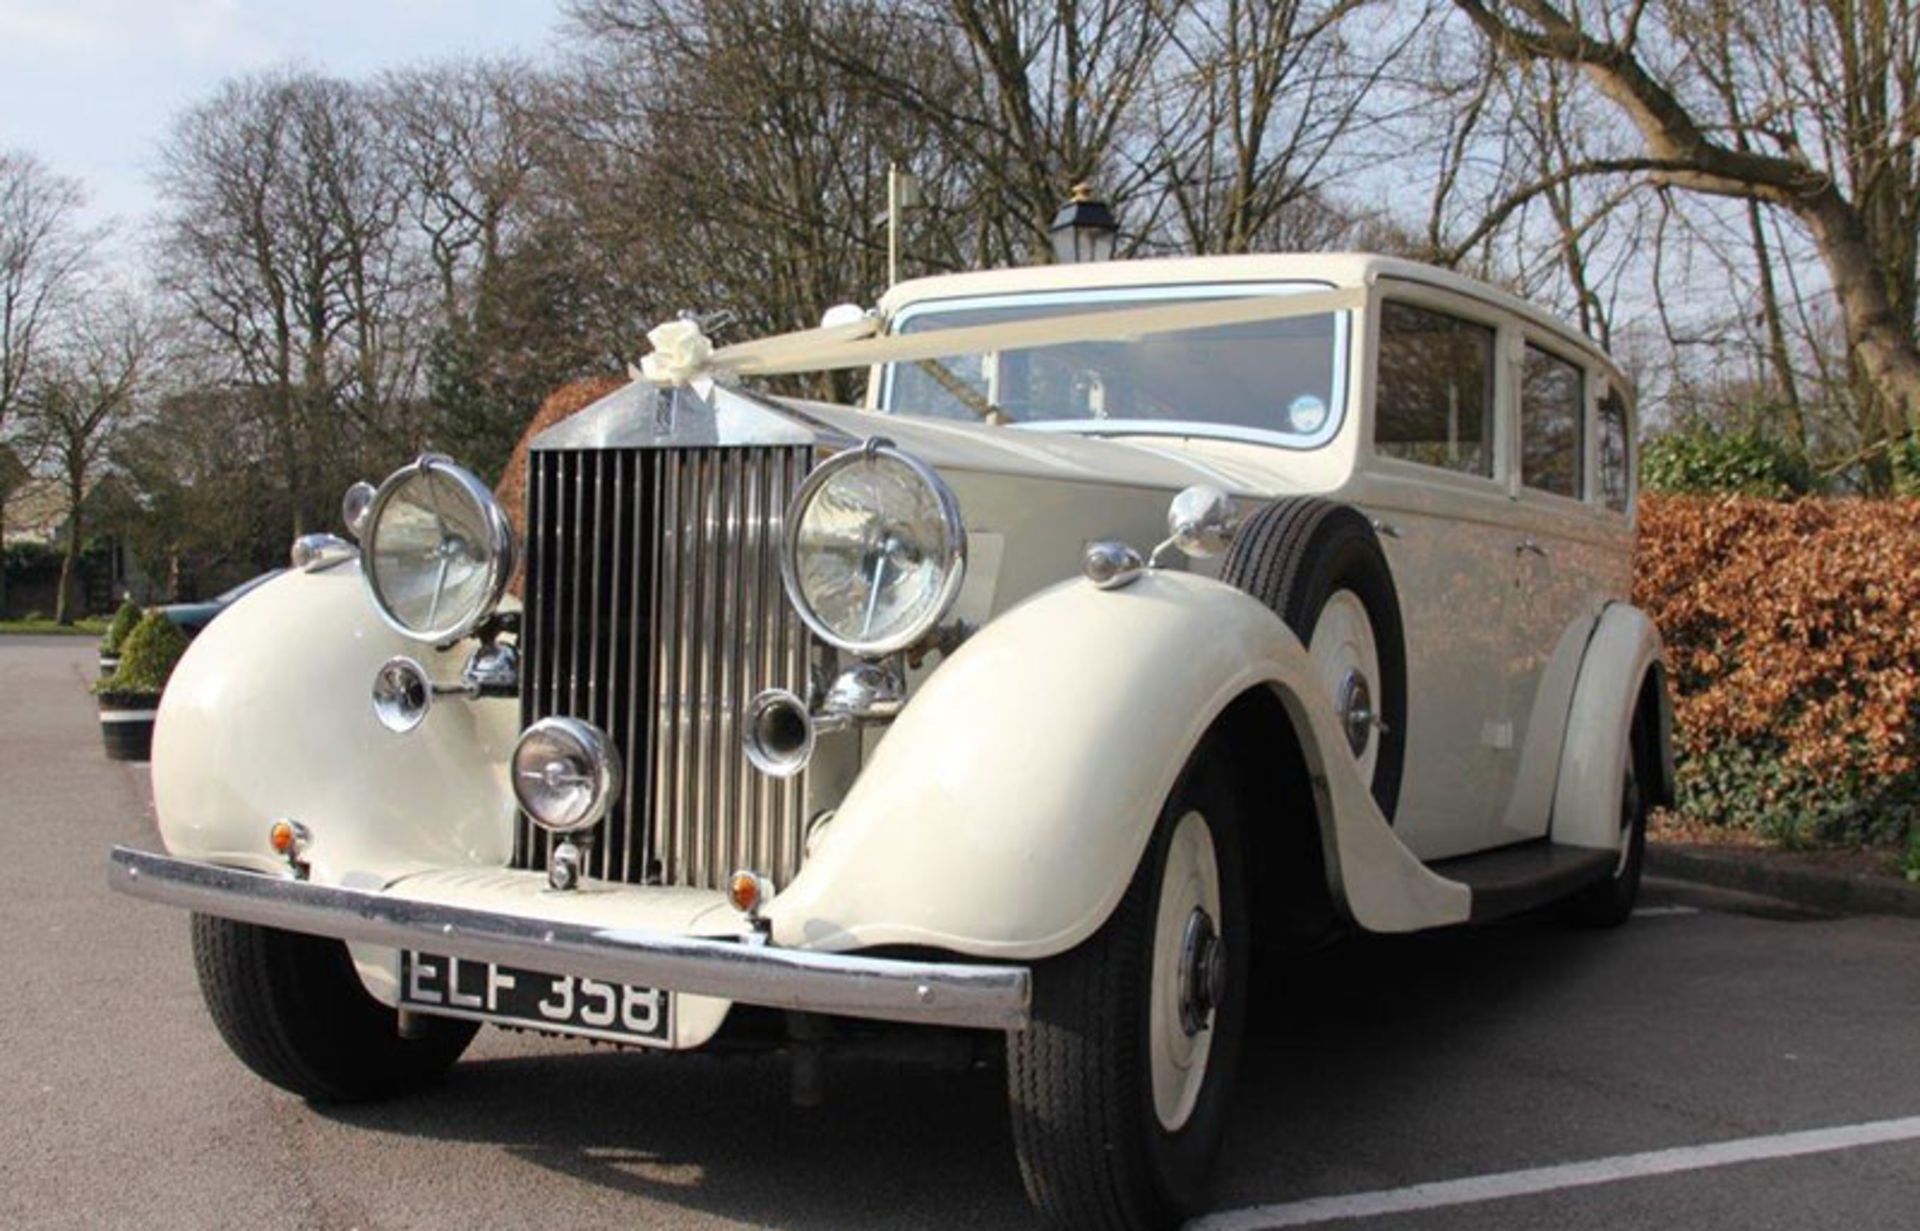 (1936) Rolls Royce Phantom 3 Vintage 6 Passenger Limousine (Ivory White)